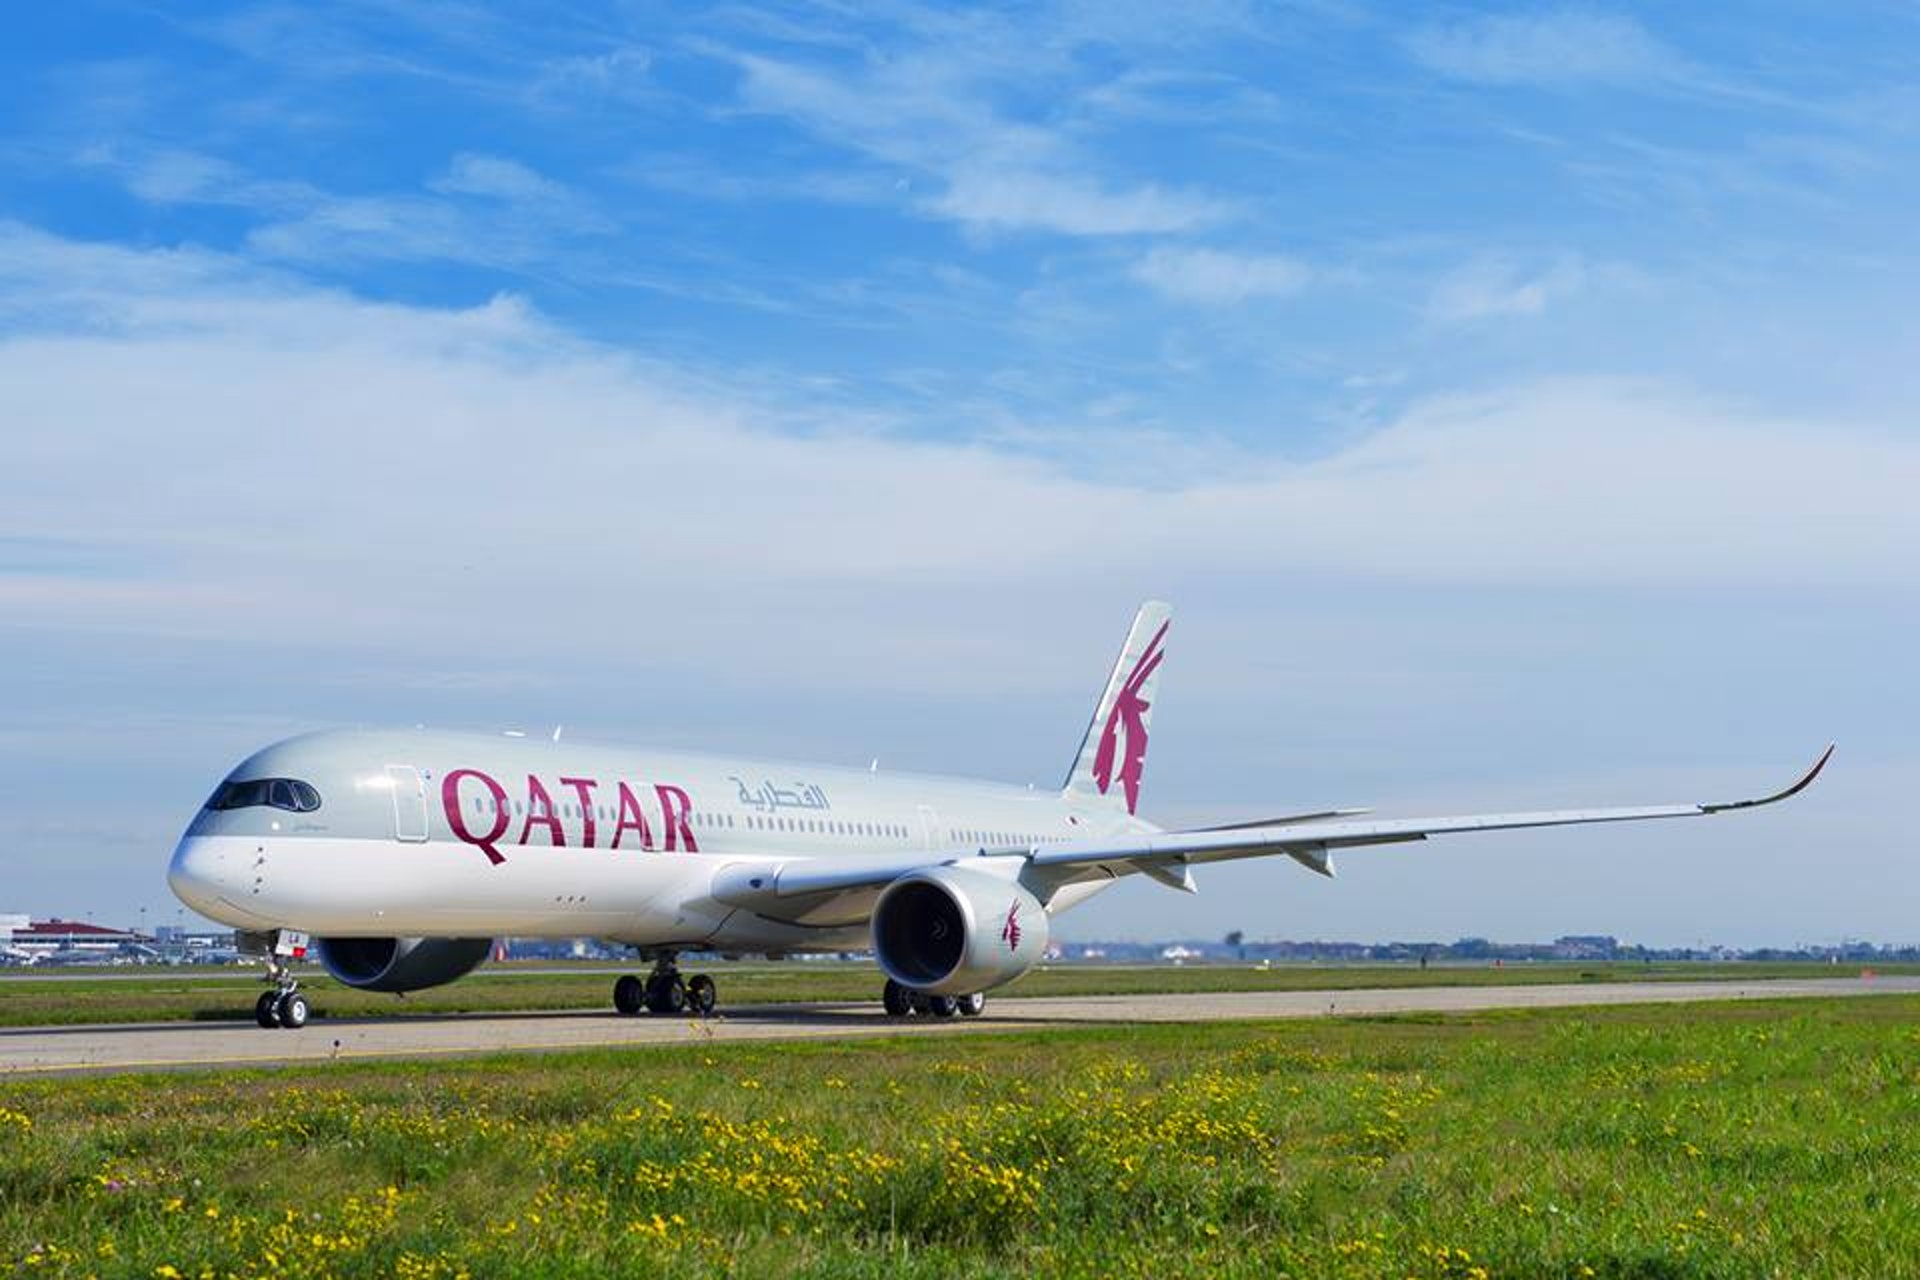 卡塔爾航空停飛埃及至少3港旅行團需轉航機返港